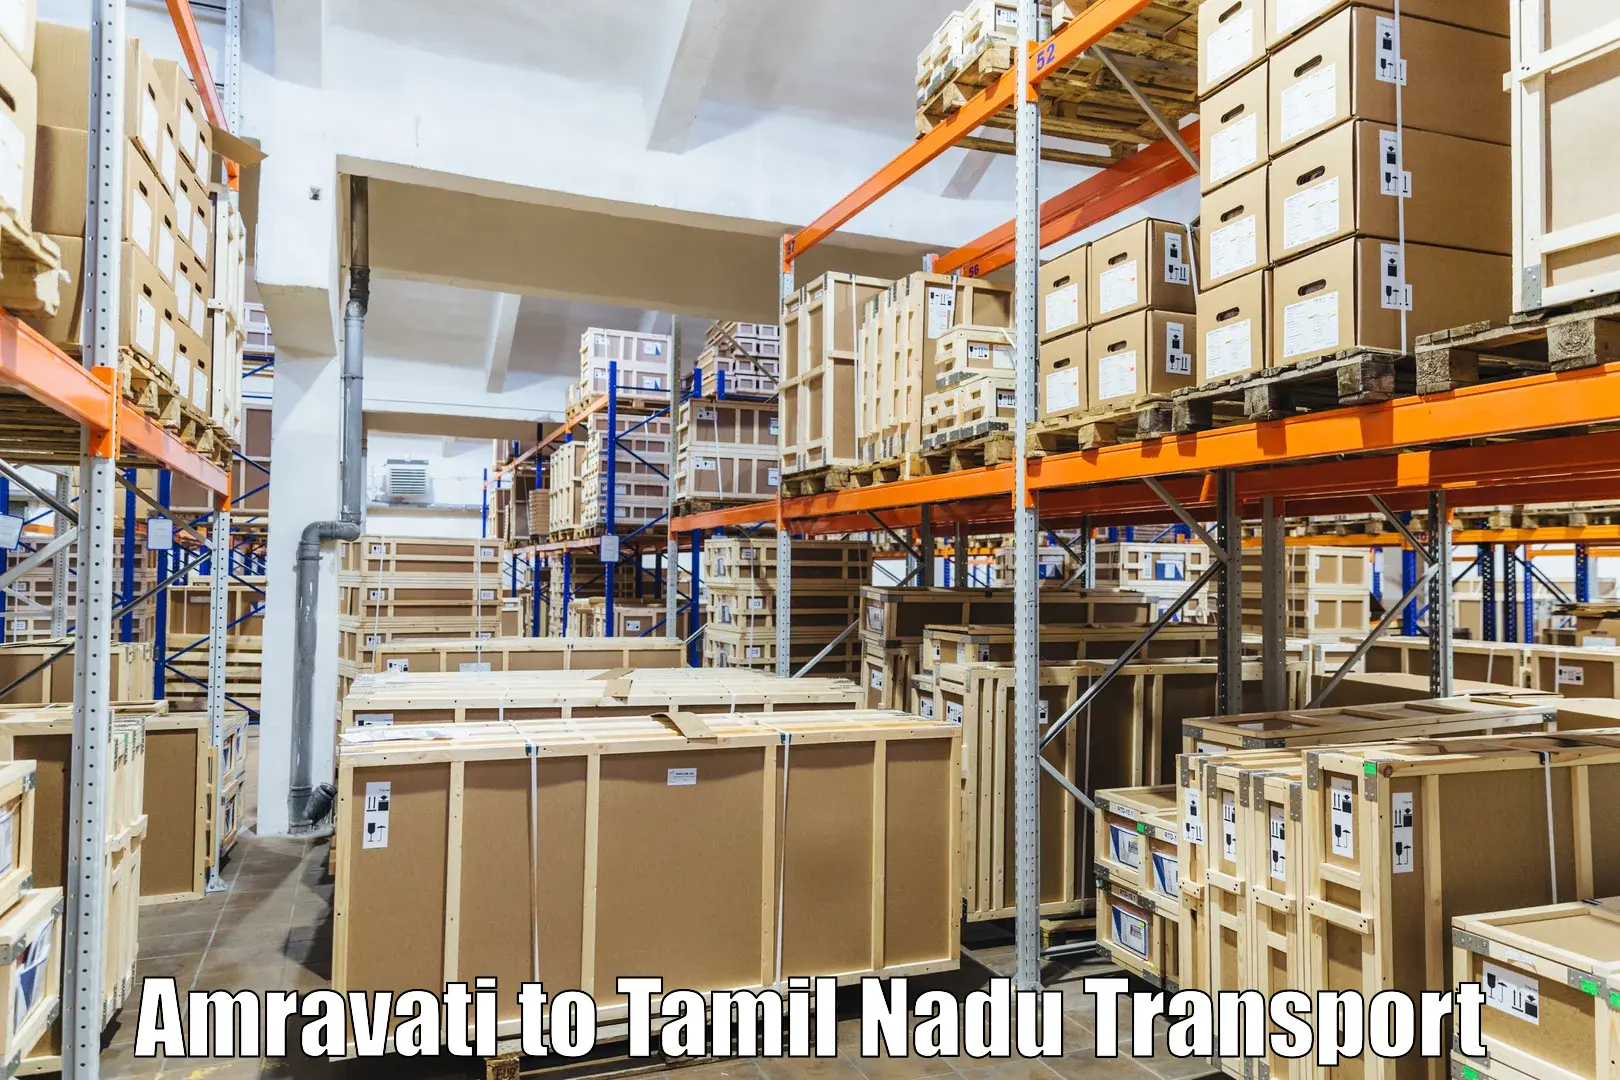 Road transport online services Amravati to Perundurai